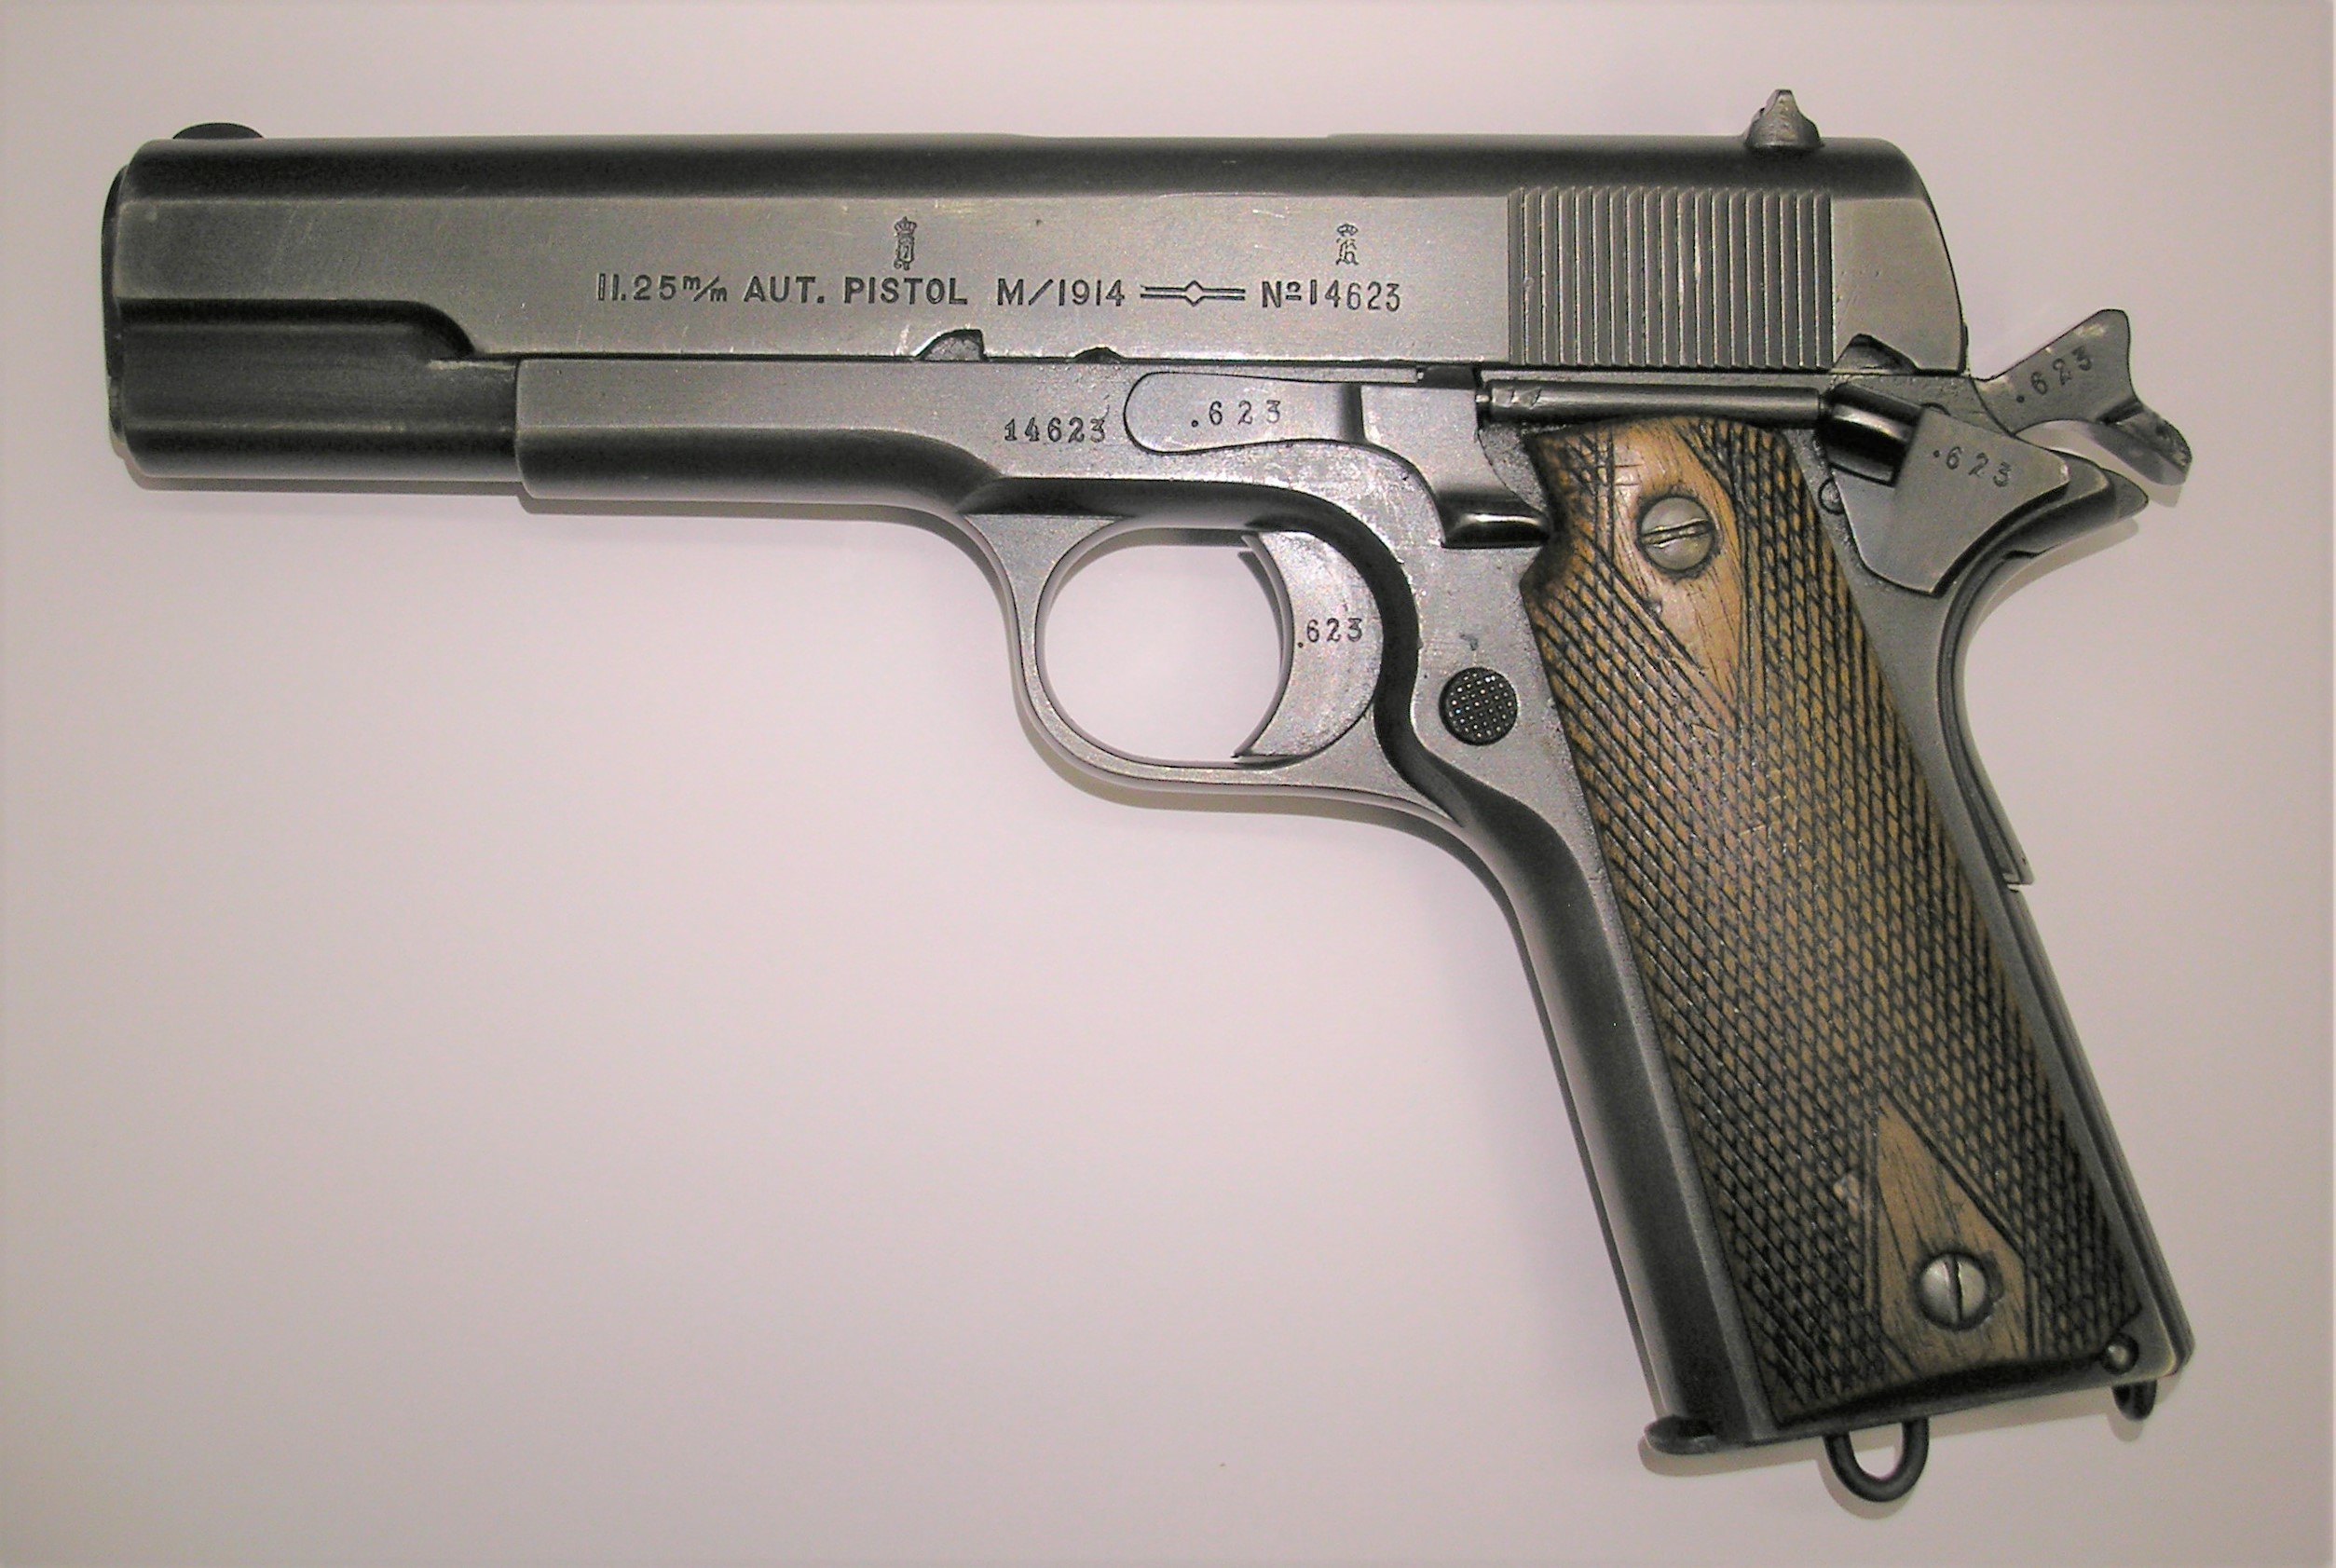 ./guns/pistol/bilder/Pistol-Kongsberg-M1914-1927-14623-2.JPG